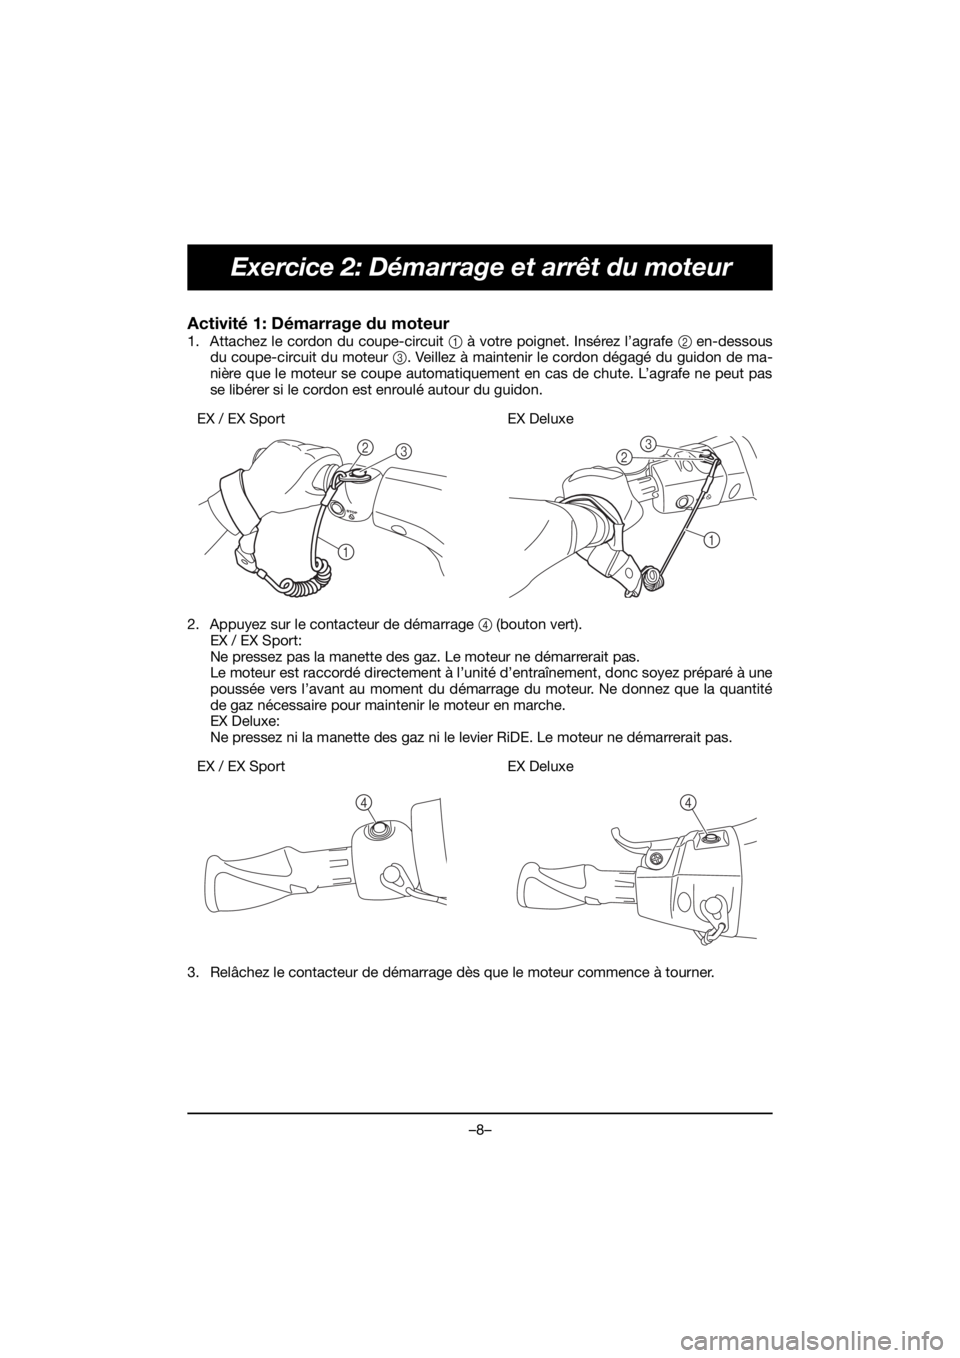 YAMAHA EX SPORT 2019  Manual de utilização (in Portuguese) –8–
Exercice 2: Démarrage et arrêt du moteur
Activité 1: Démarrage du moteur 
1. Attachez le cordon du coupe-circuit 1 à votre poignet. Insérez l’agrafe 2 en-dessous
du coupe-circuit du mo